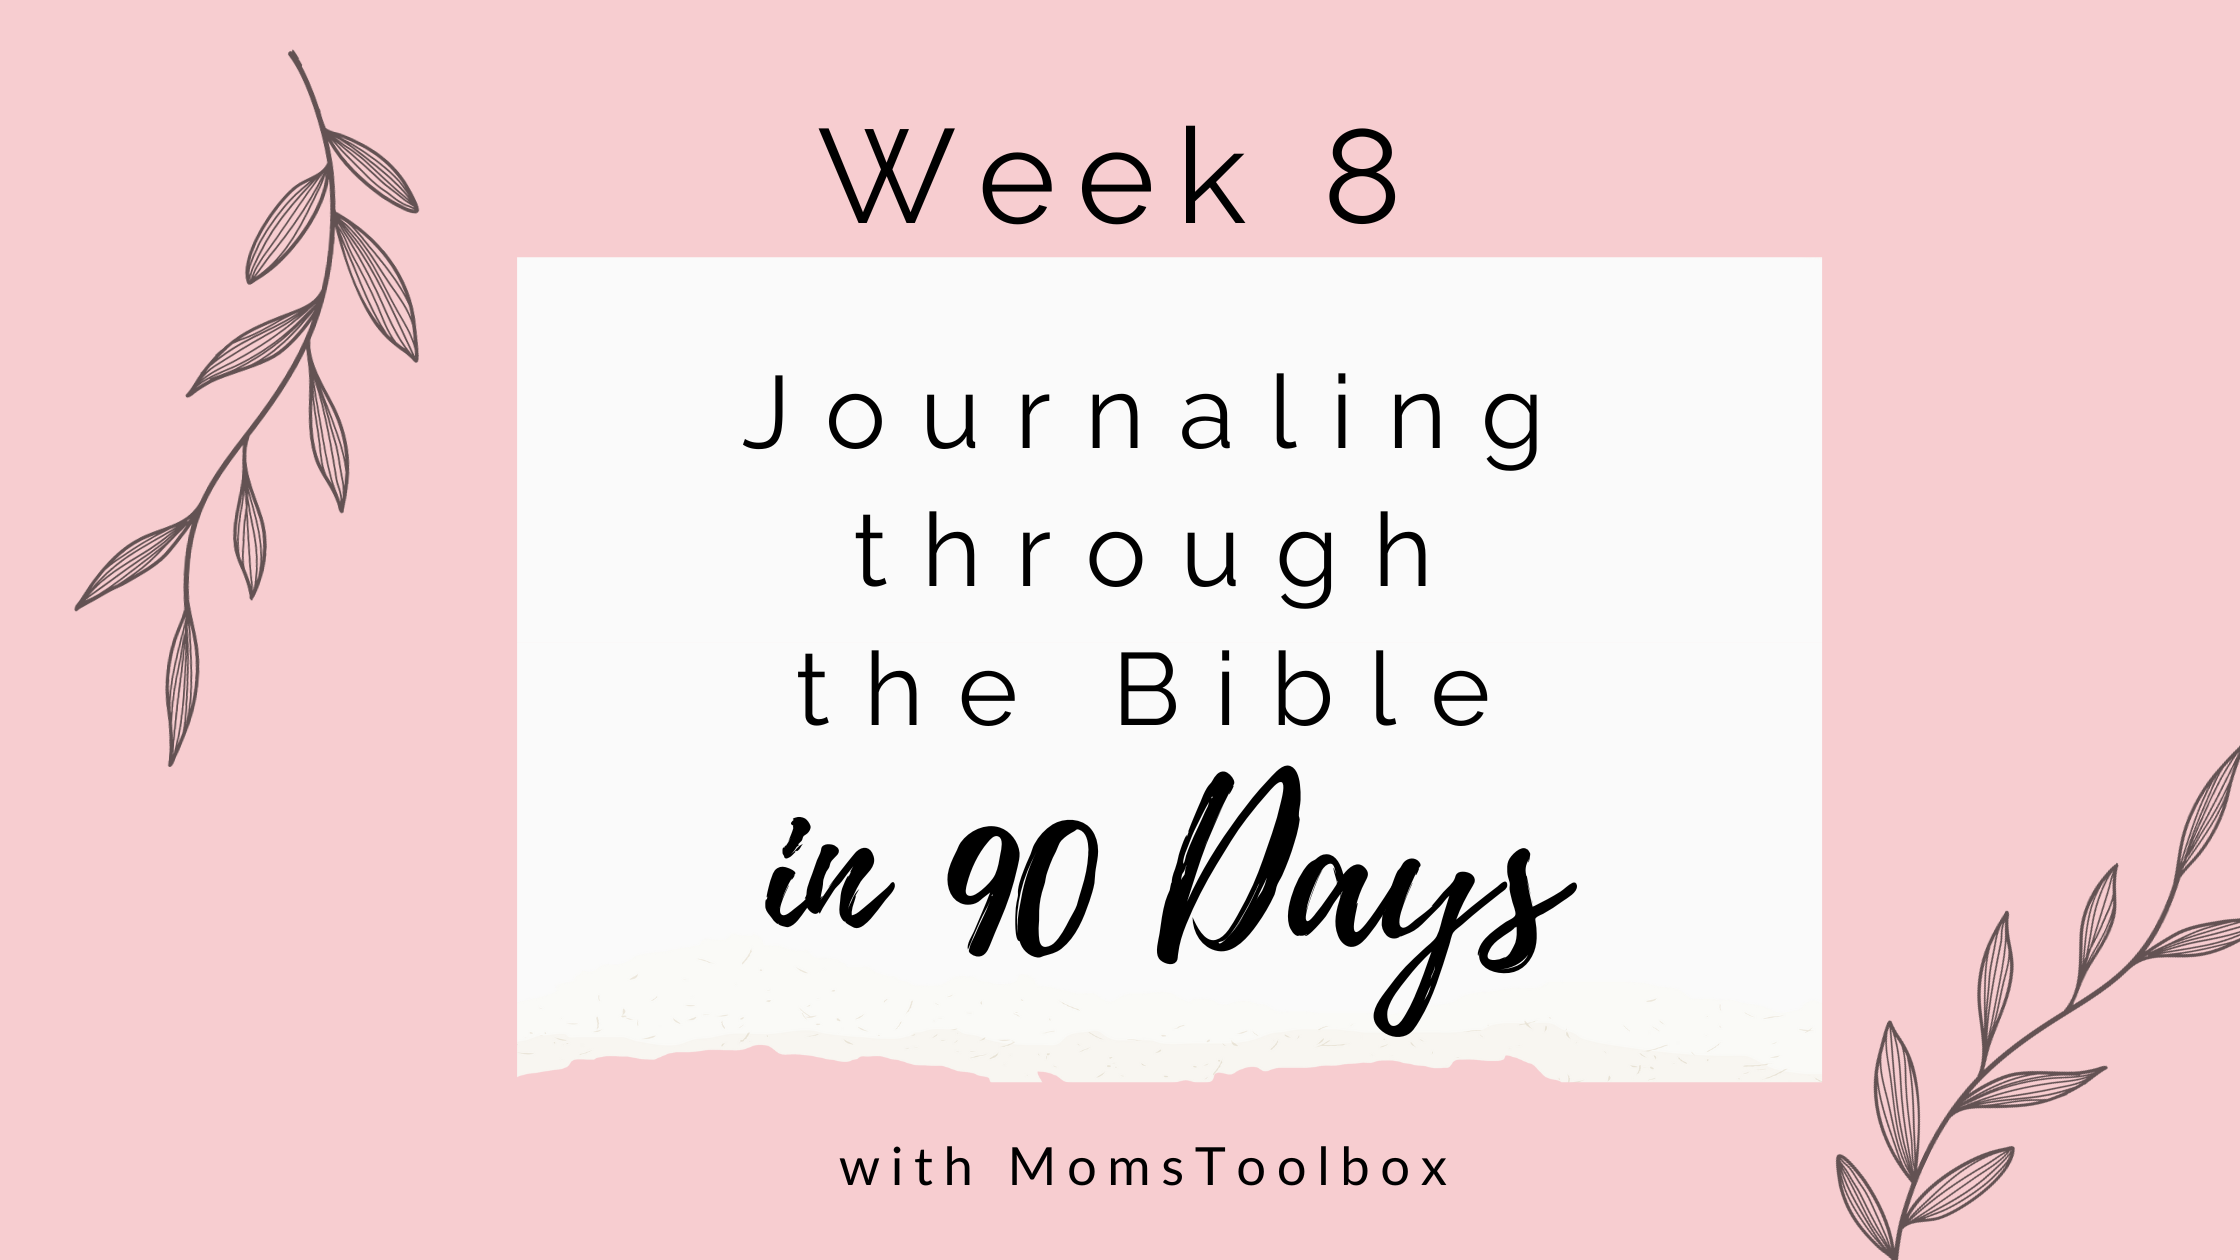 Journaling through the Bible in 90 days: Week 8!